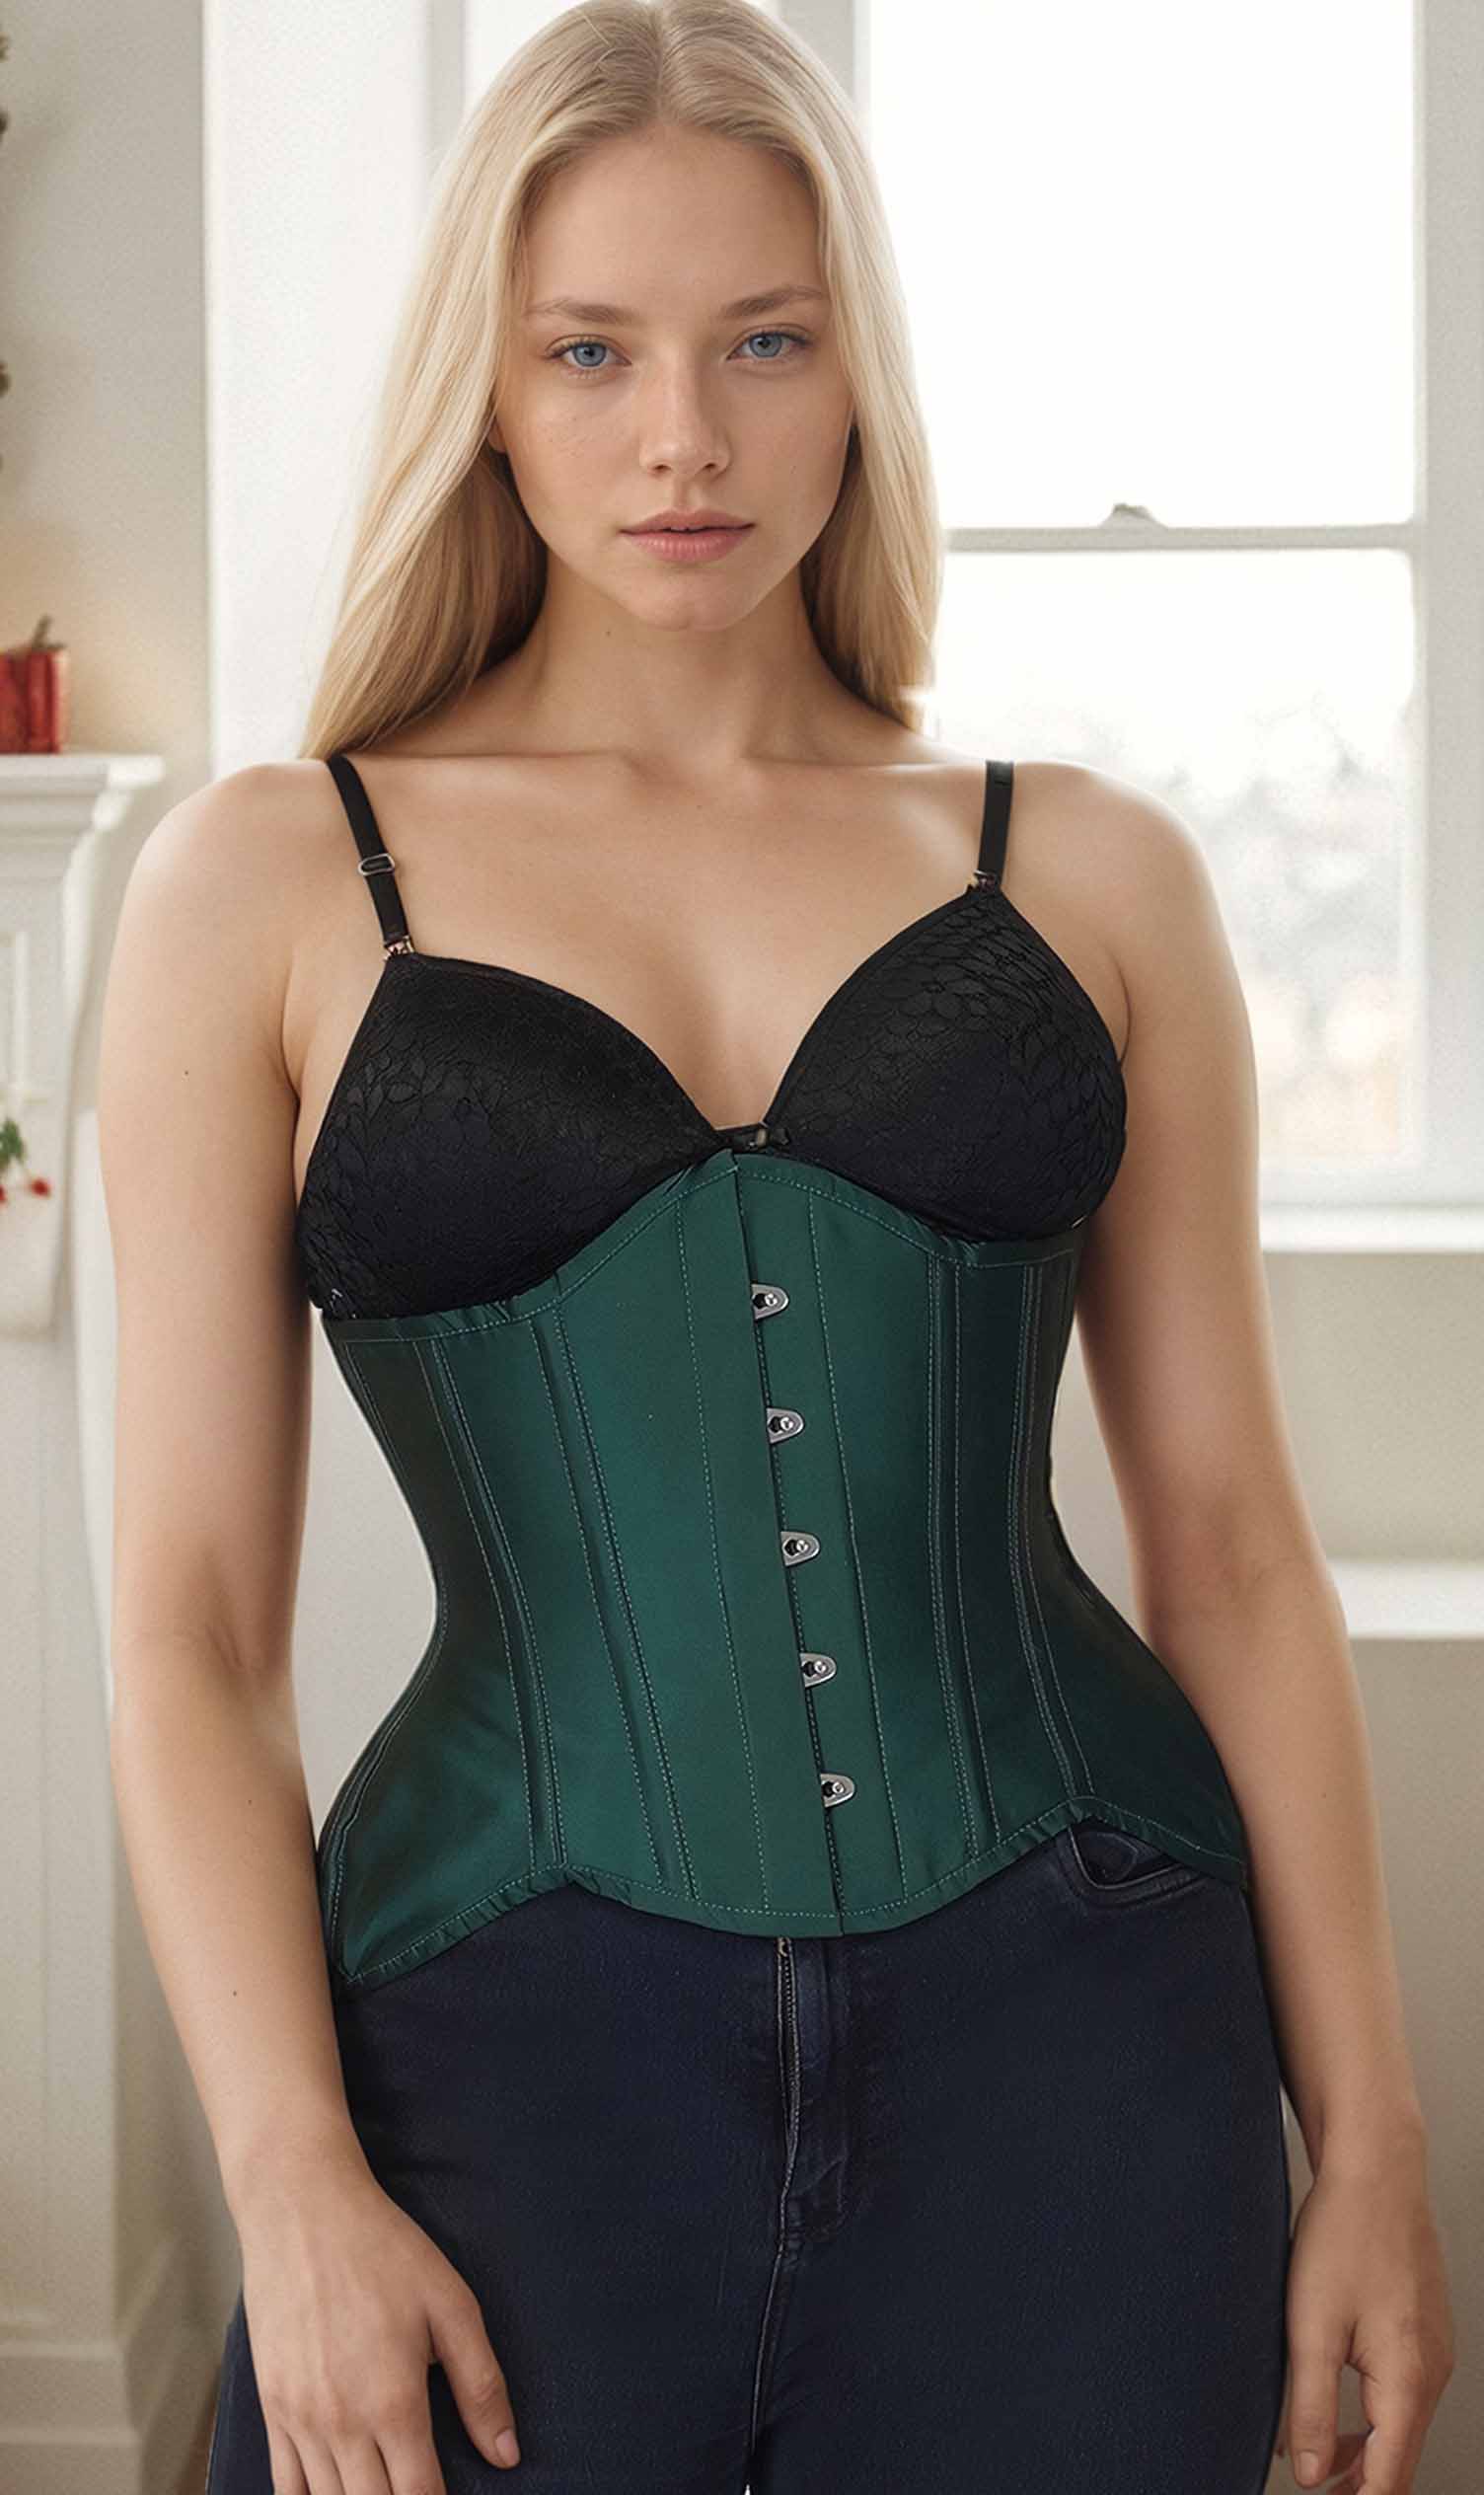 https://www.corsetdeal.com/cdn/shop/files/BC-1876_F_M_Bunny_Corset_Bespoke_Corset_Aurora_Green_Curvy_Corset_1a3667a1-cec7-460d-9de8-2473af196906.jpg?v=1705680992